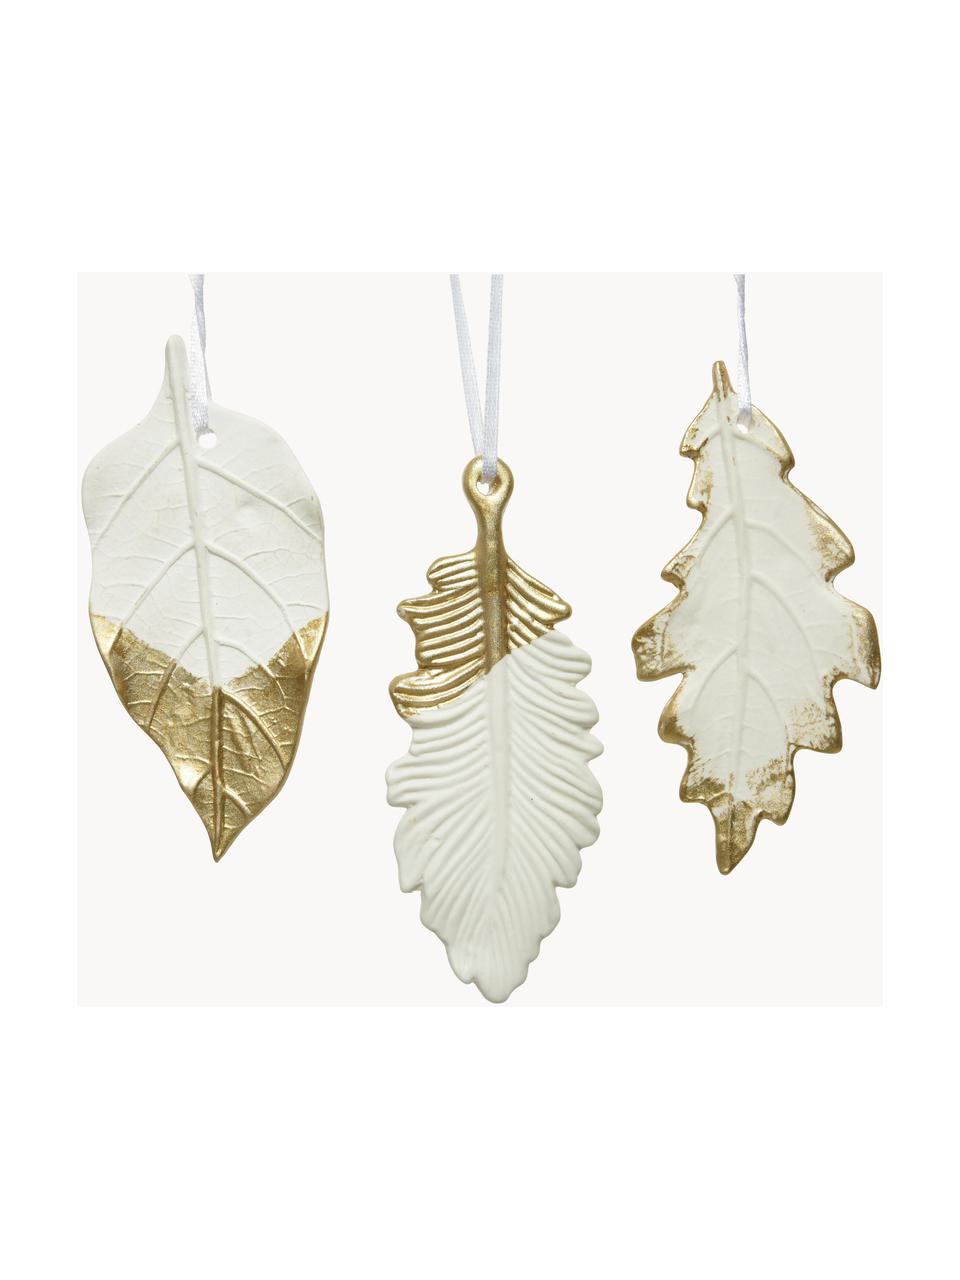 Décorations à suspendre Leaves, 3 élém., Porcelaine, Blanc, doré, larg. 4 x haut. 13 cm